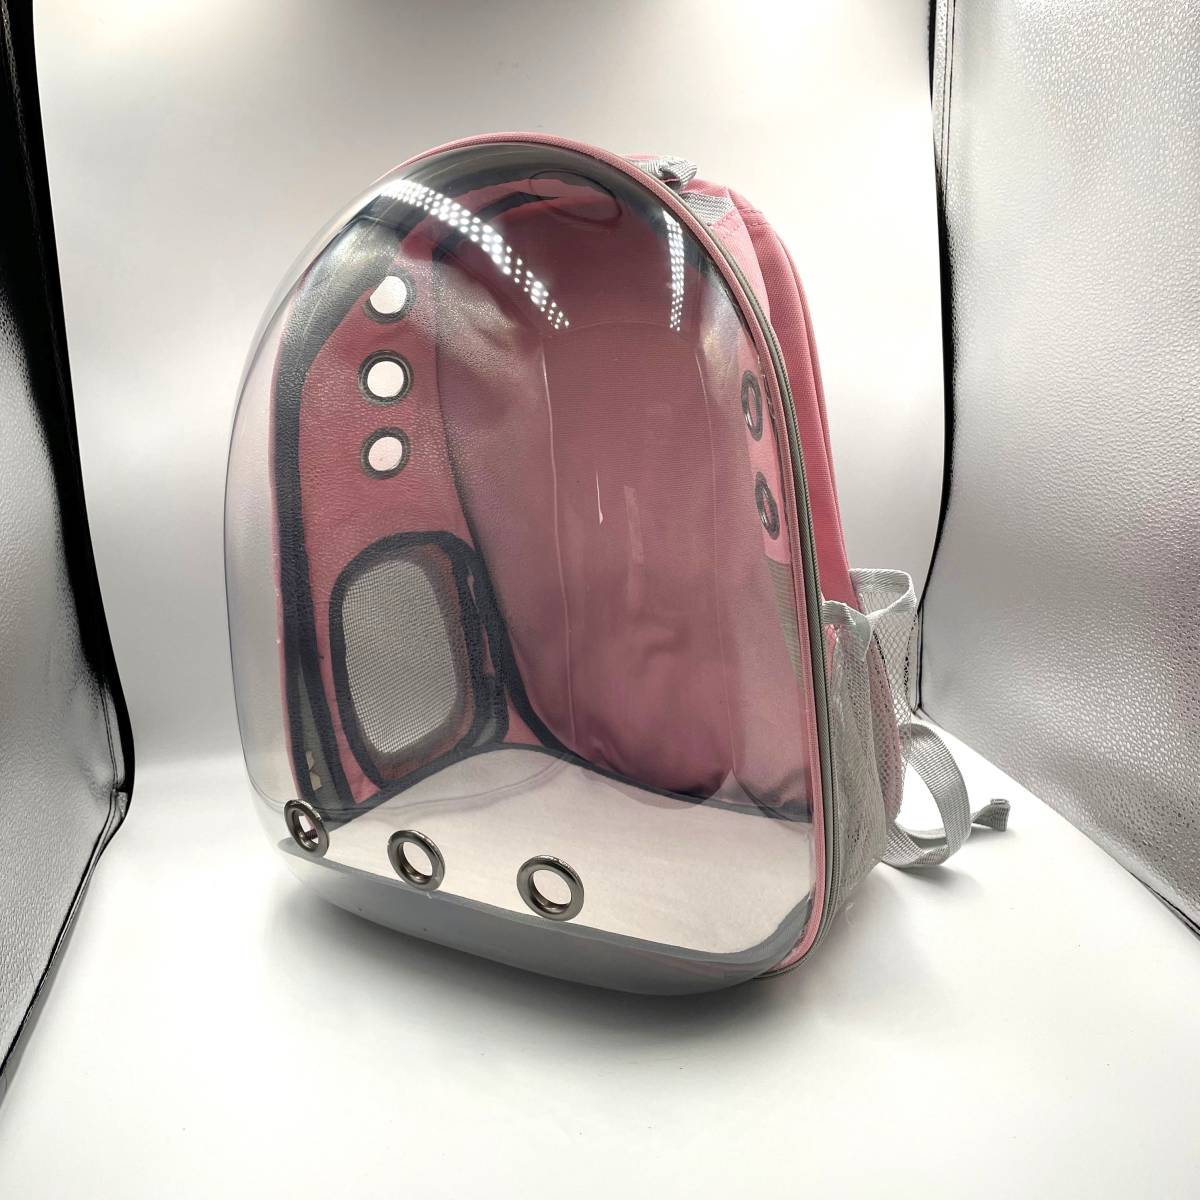 (A) домашнее животное дорожная сумка рюкзак розовый кейс кошка собака маленький размер собака твердый Capsule type прозрачный UV cut сетка "дышит" путешествие 